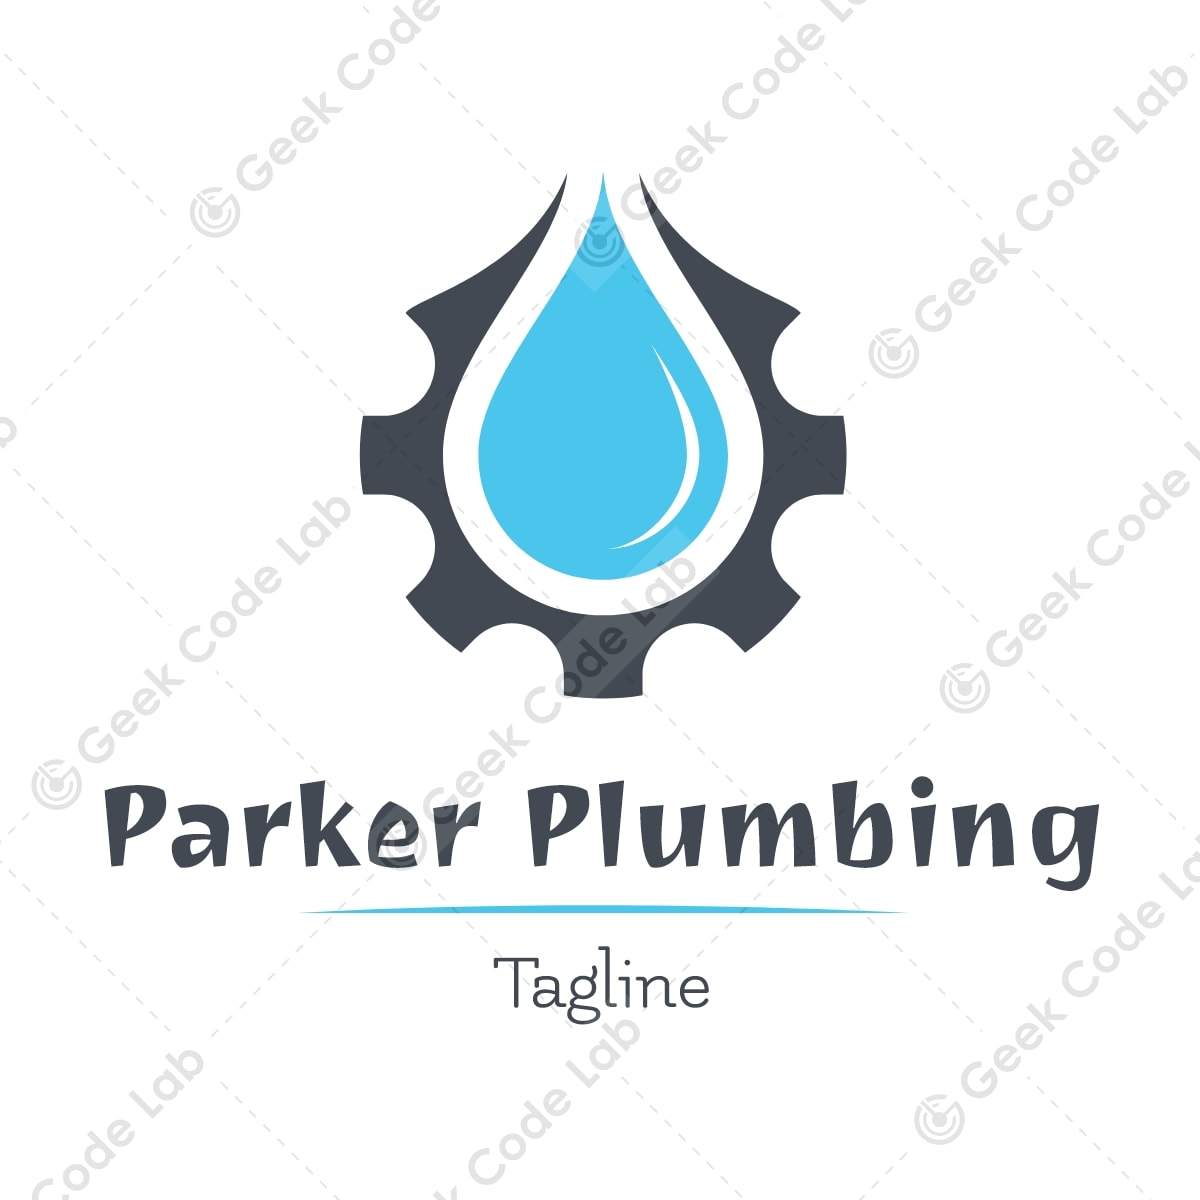 Parker Plumbing